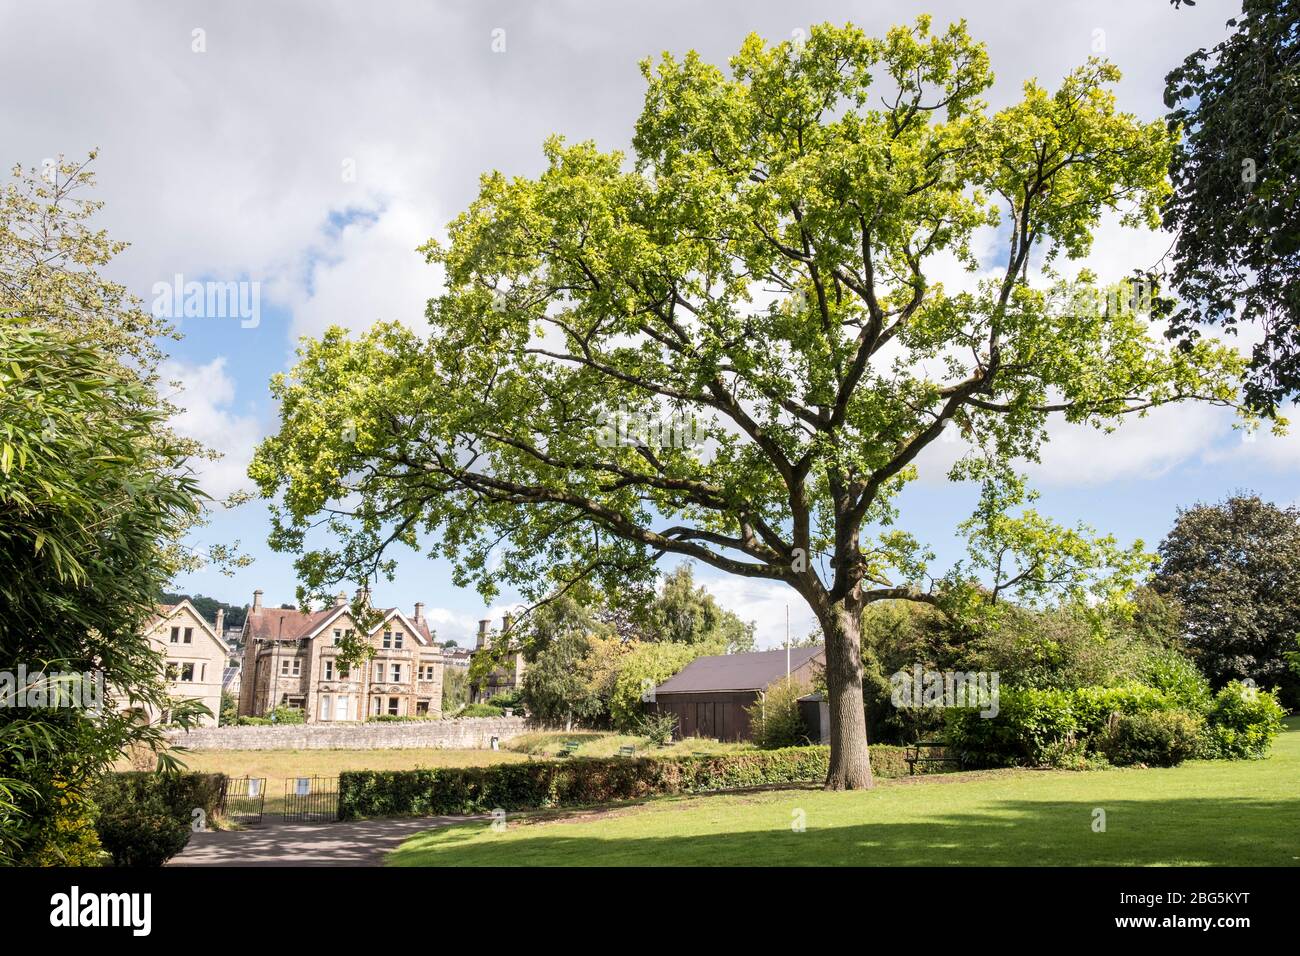 Le chêne doré, Quercus robur 'Concordia', planté pour commémorer la fin de la première Guerre mondiale. Sydney Gardens, Bath, Somerset. Angleterre, GB, Royaume-Uni Banque D'Images